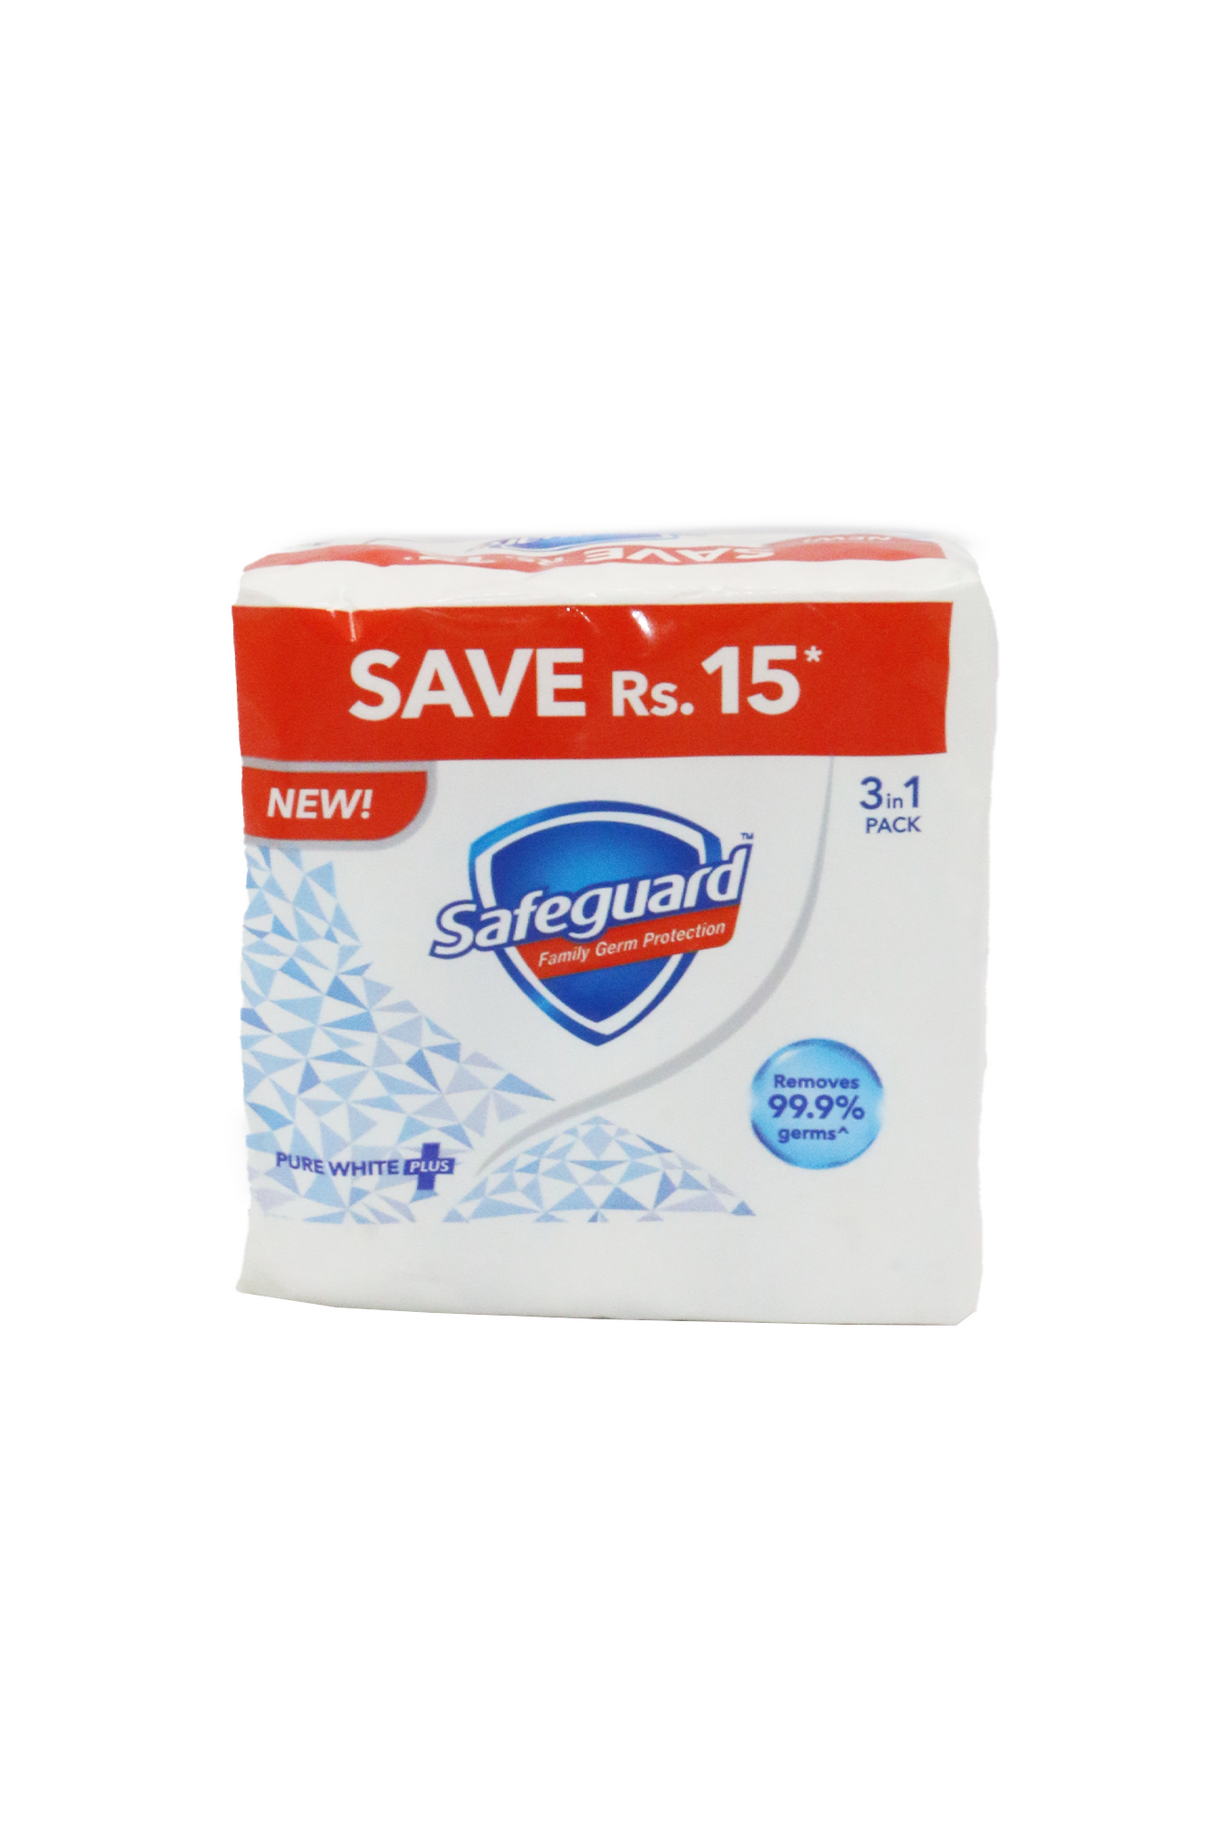 safeguard soap pure white 3p 168g